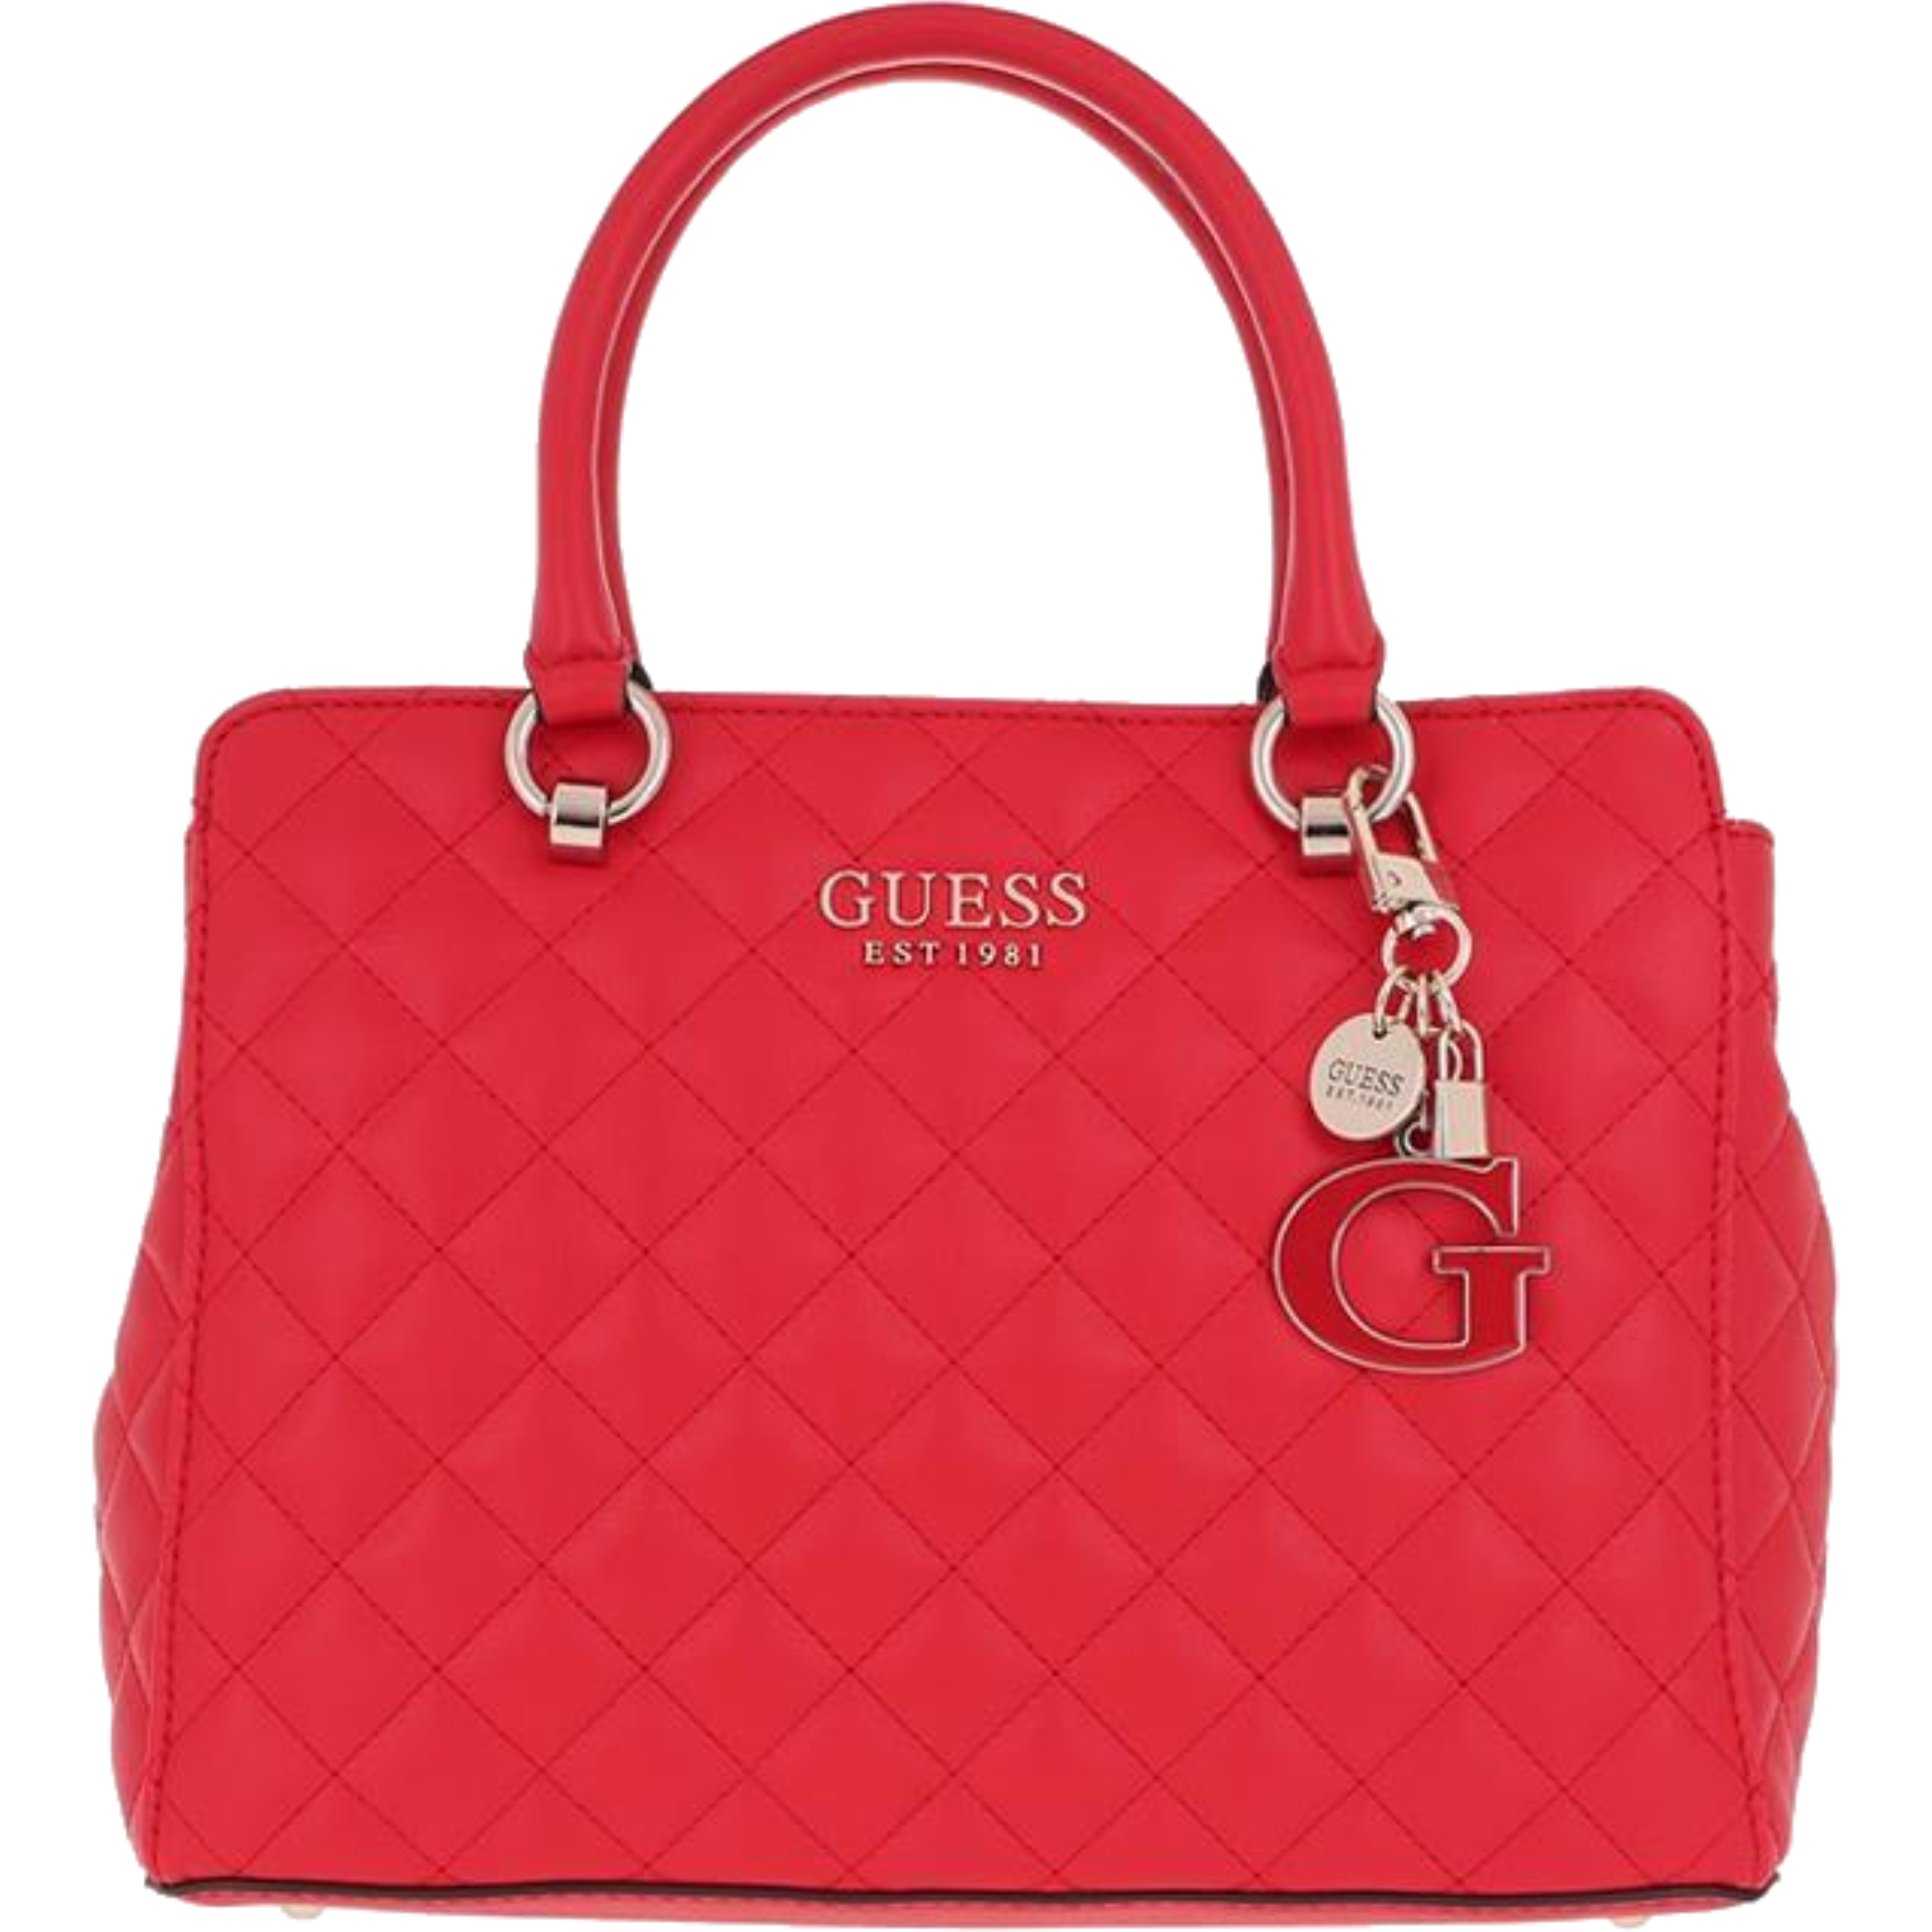 תיק לנשים דגם Guess Melise Girlfriend Carryall - צבע אדום